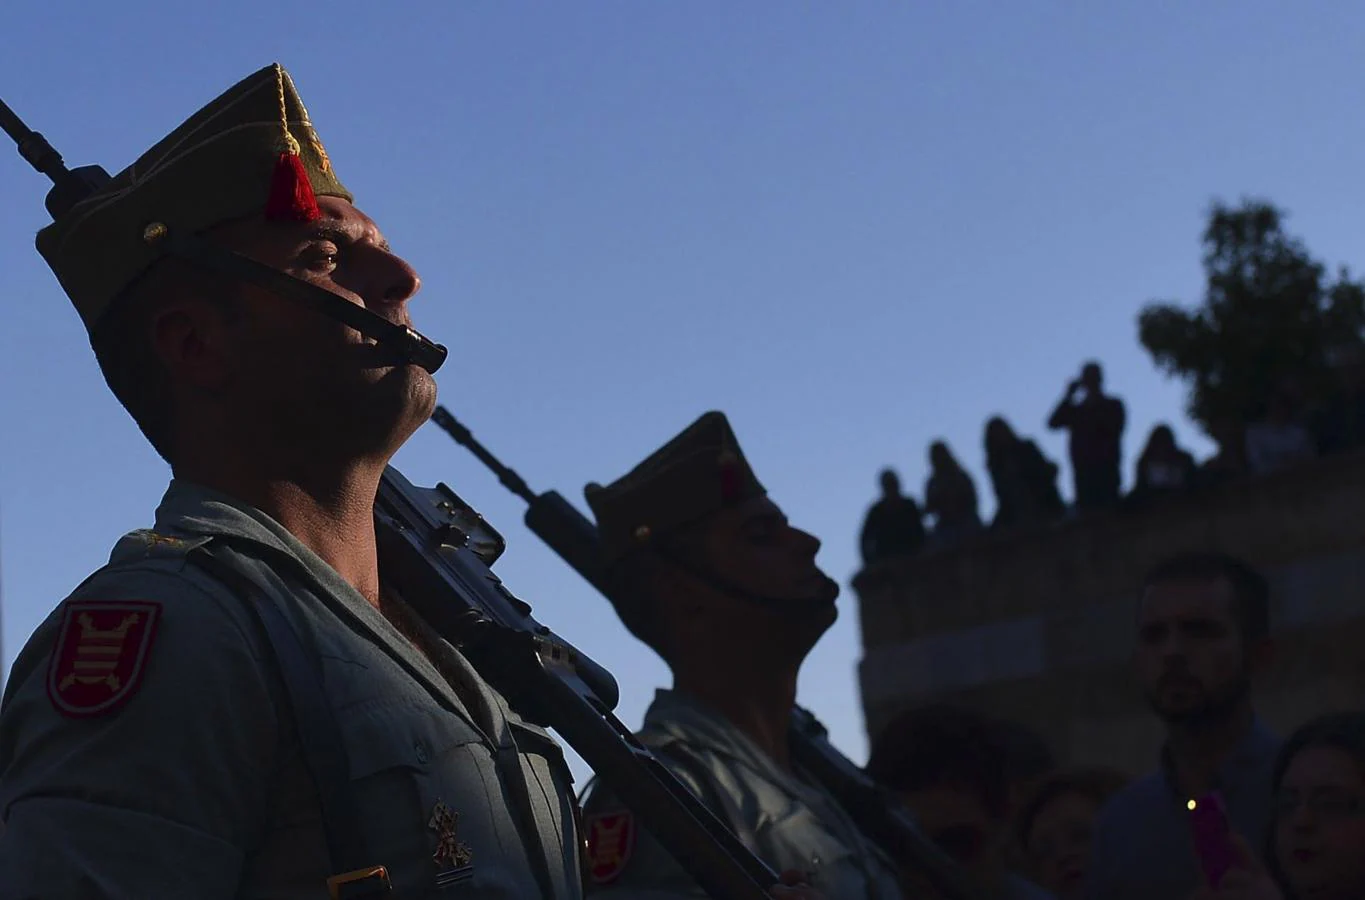 Habituales en la Semana Santa. Varios legionarios durante la procesión de la Hermandad del Señor de la Caridad más conocido como el Cristo de los legionarios, el Jueves Santo en Córdoba en 2016.